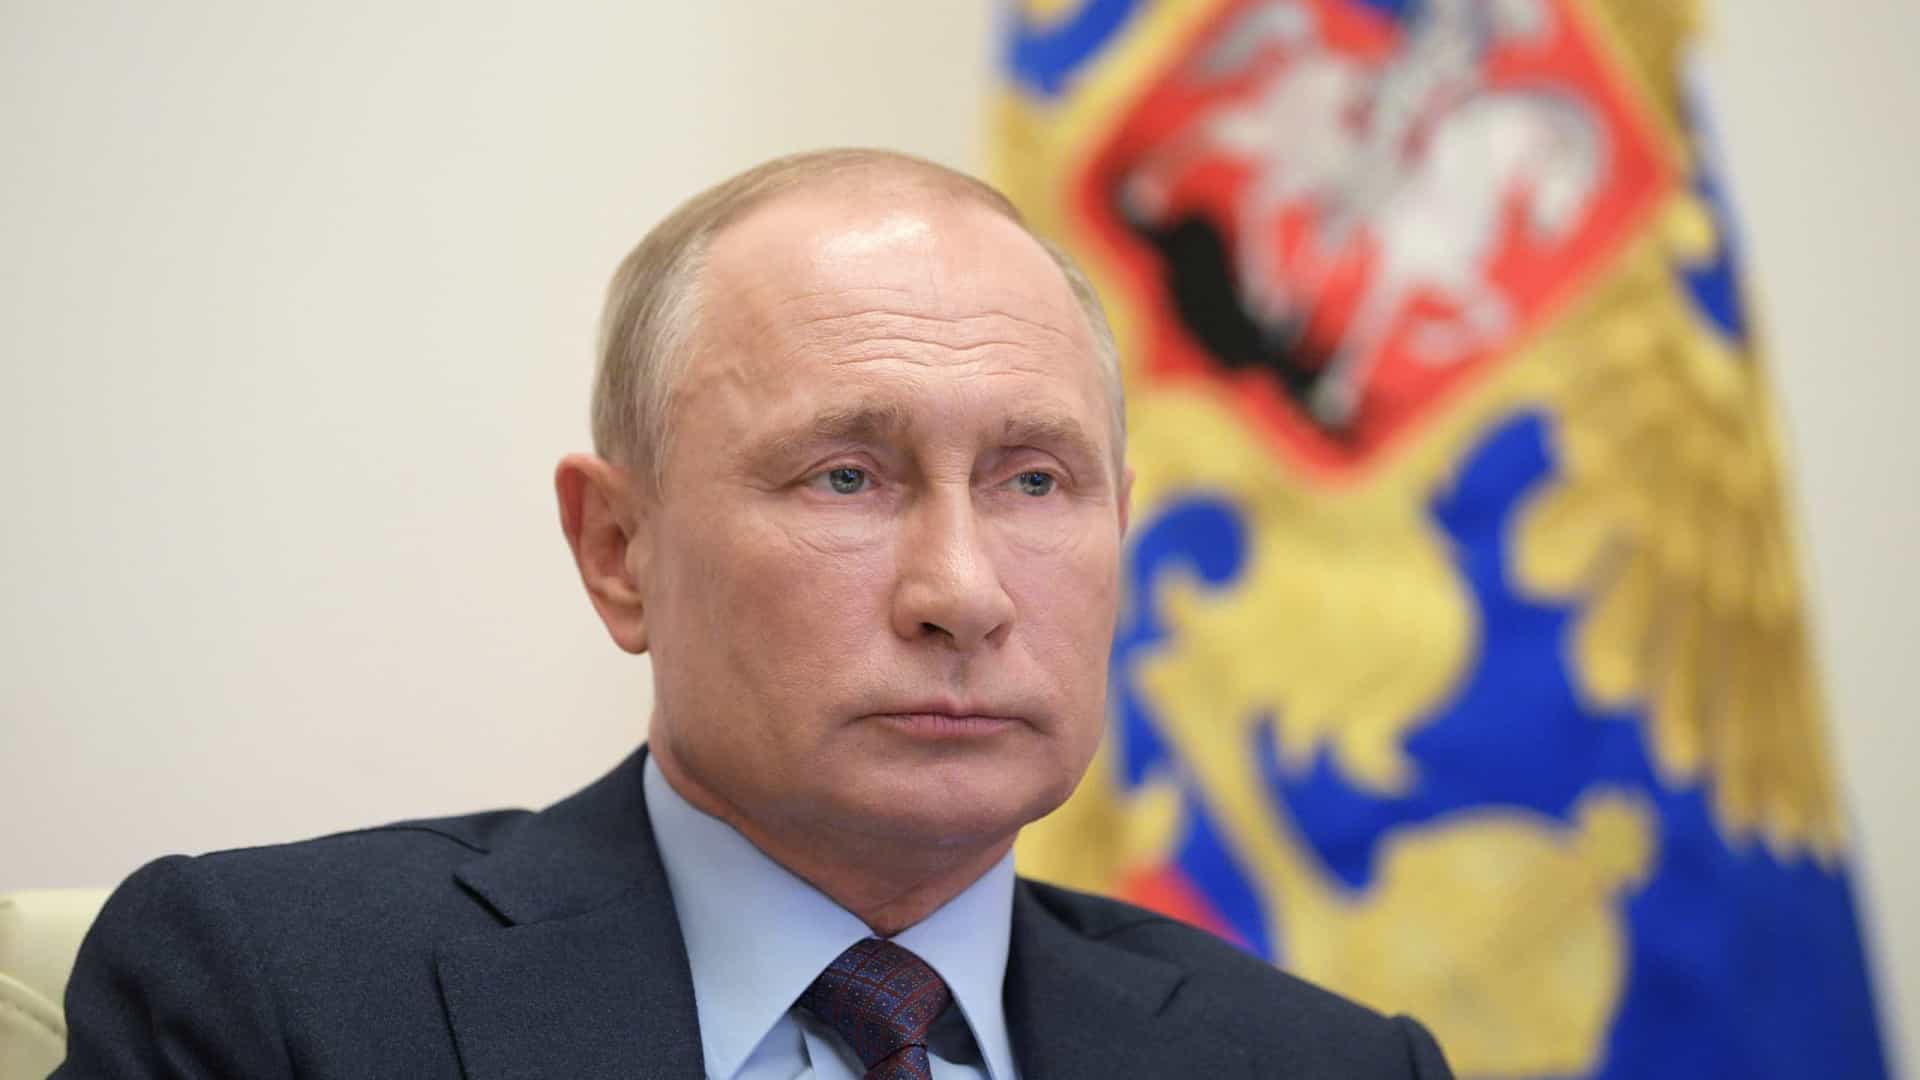 Putin coloca forças nucleares em alerta devido a críticas da Otan